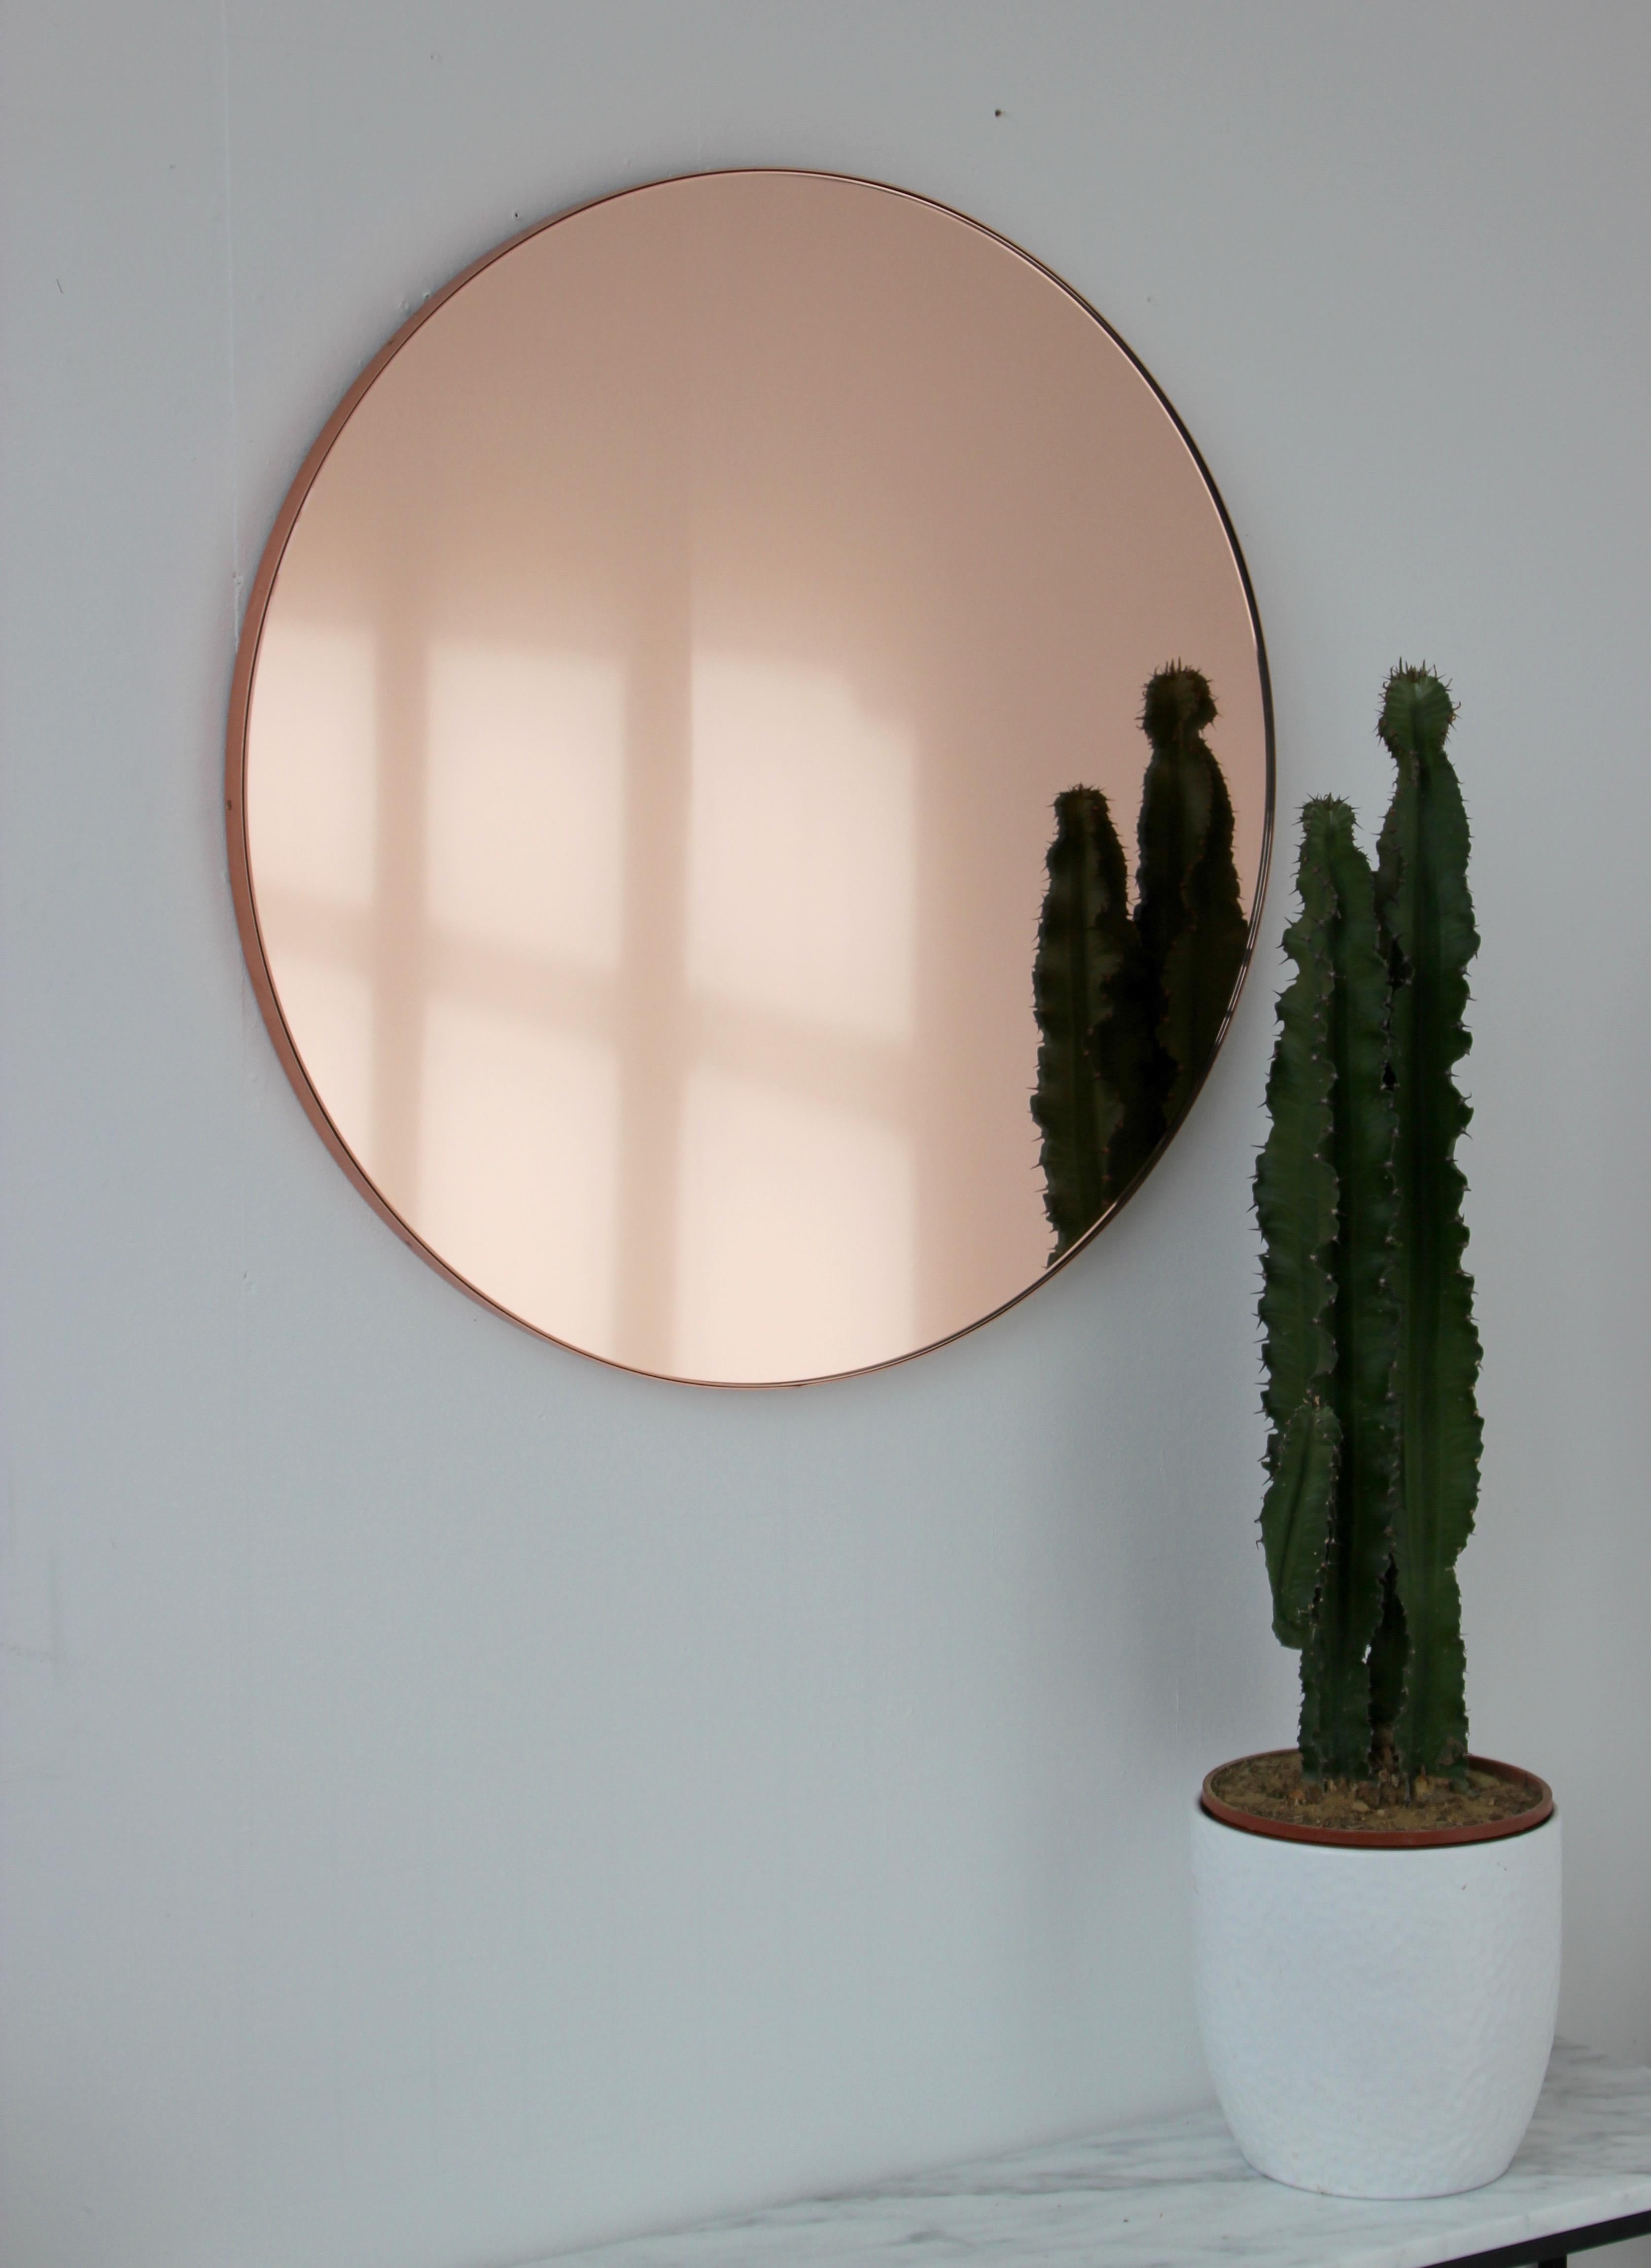 Miroir rond contemporain teinté pêche/or rose avec un cadre en cuivre brossé. Les détails et la finition, y compris les vis cuivrées visibles, soulignent l'aspect artisanal et la qualité du miroir. Conçu et fabriqué à la main à Londres, au